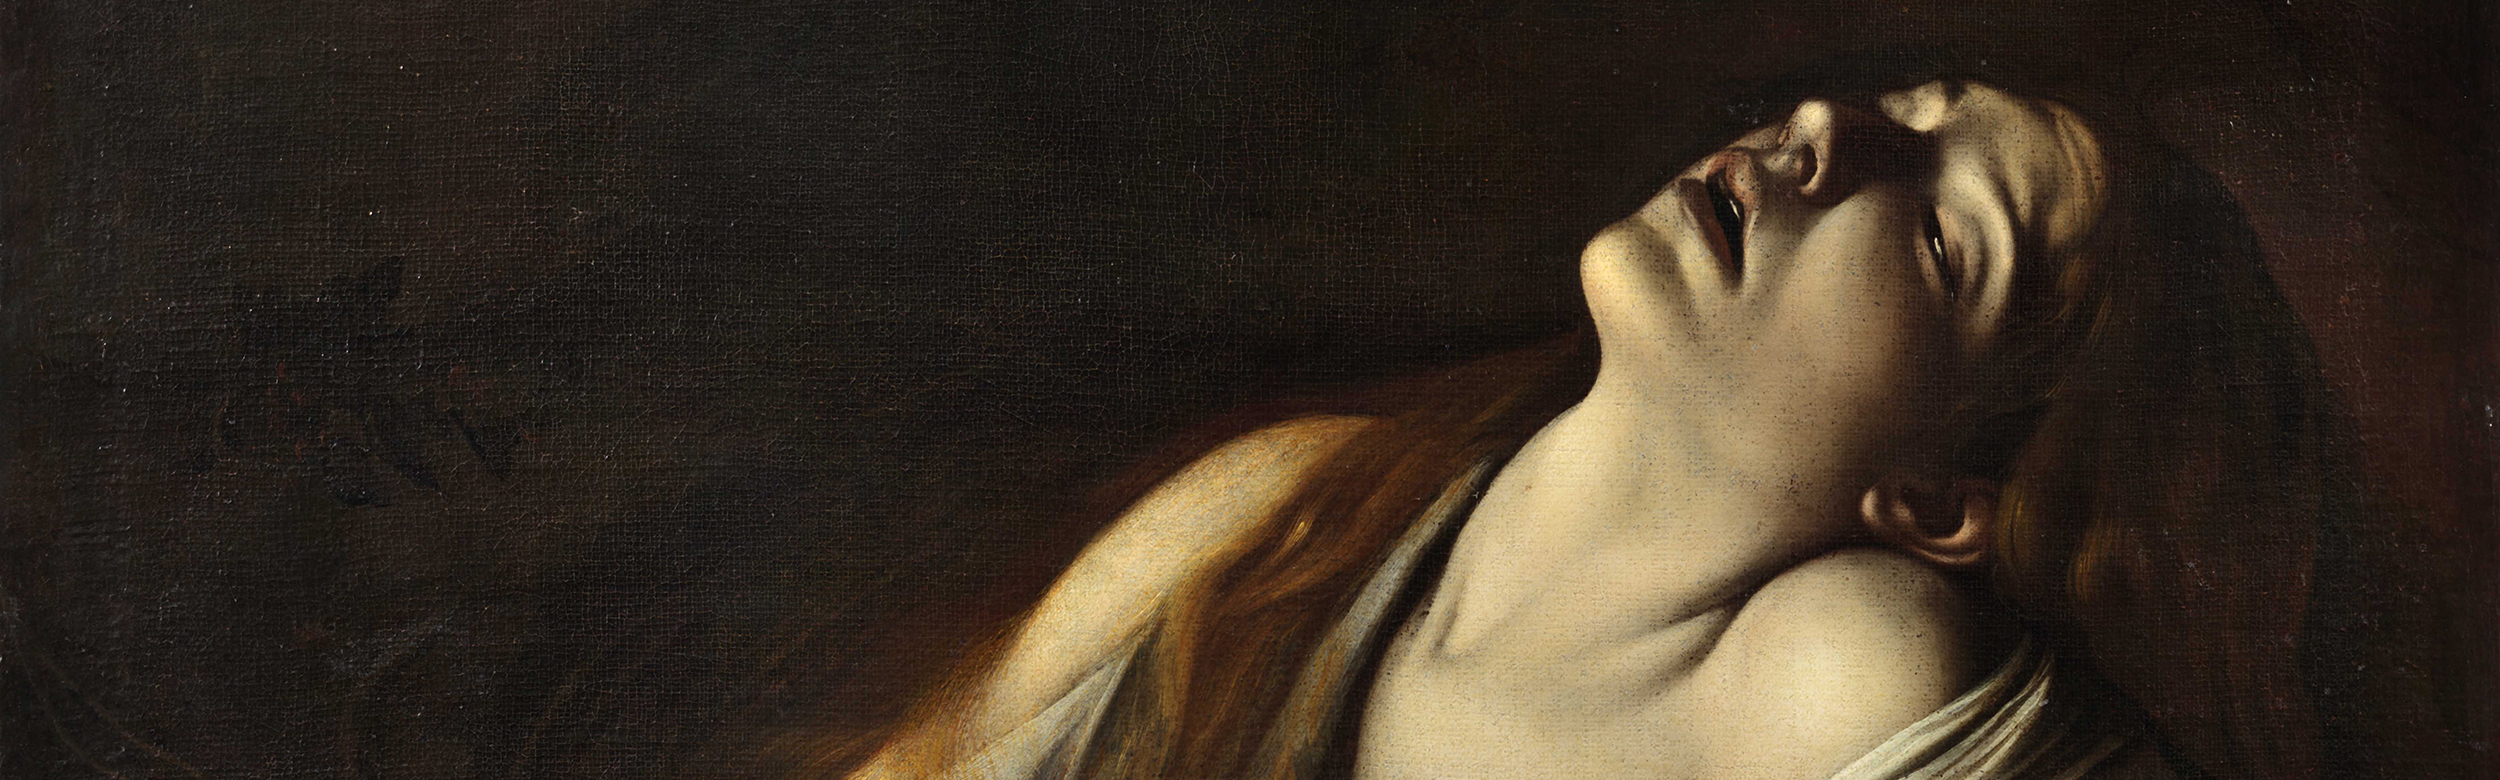 Orsola Maddalena Caccia, una pintora barroca para el Metropolitan de Nueva York